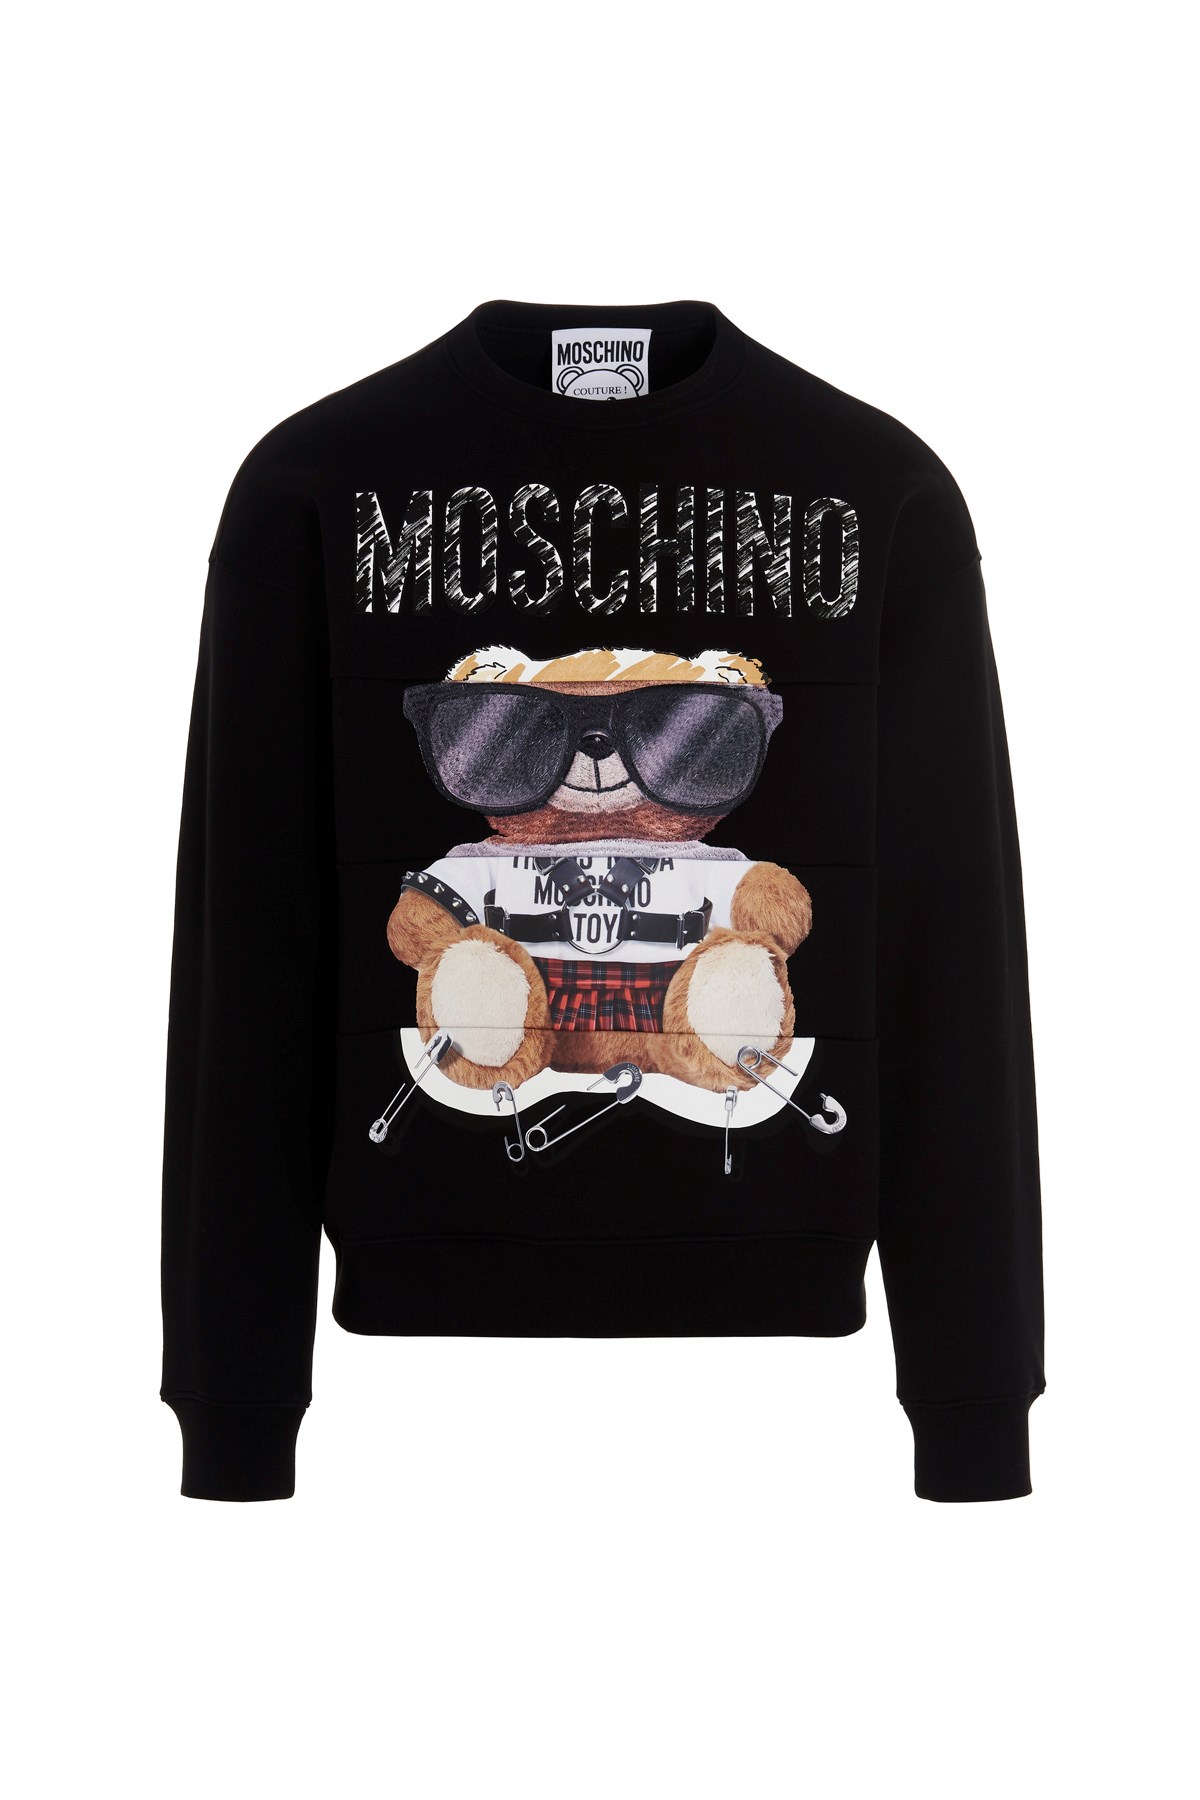 MOSCHINO 'Teddy' Sweatshirt